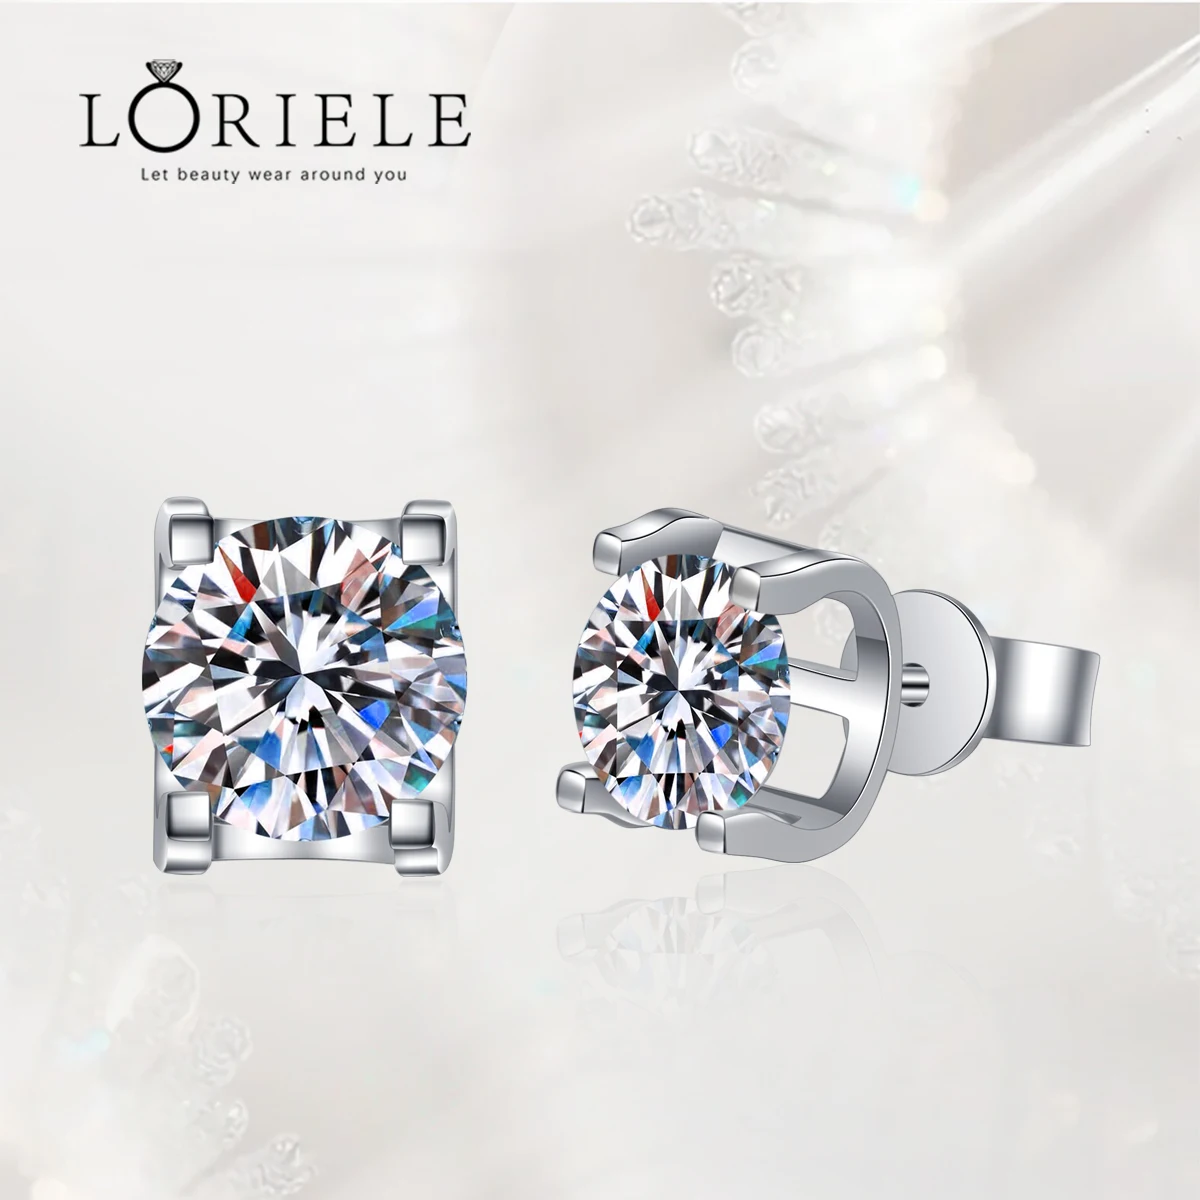 

LORIELE GRA Certified Moissanite Stud Earrings For Women Men D Color VVS Moissanite Earrings Sterling Silver Diamond Ear Studs